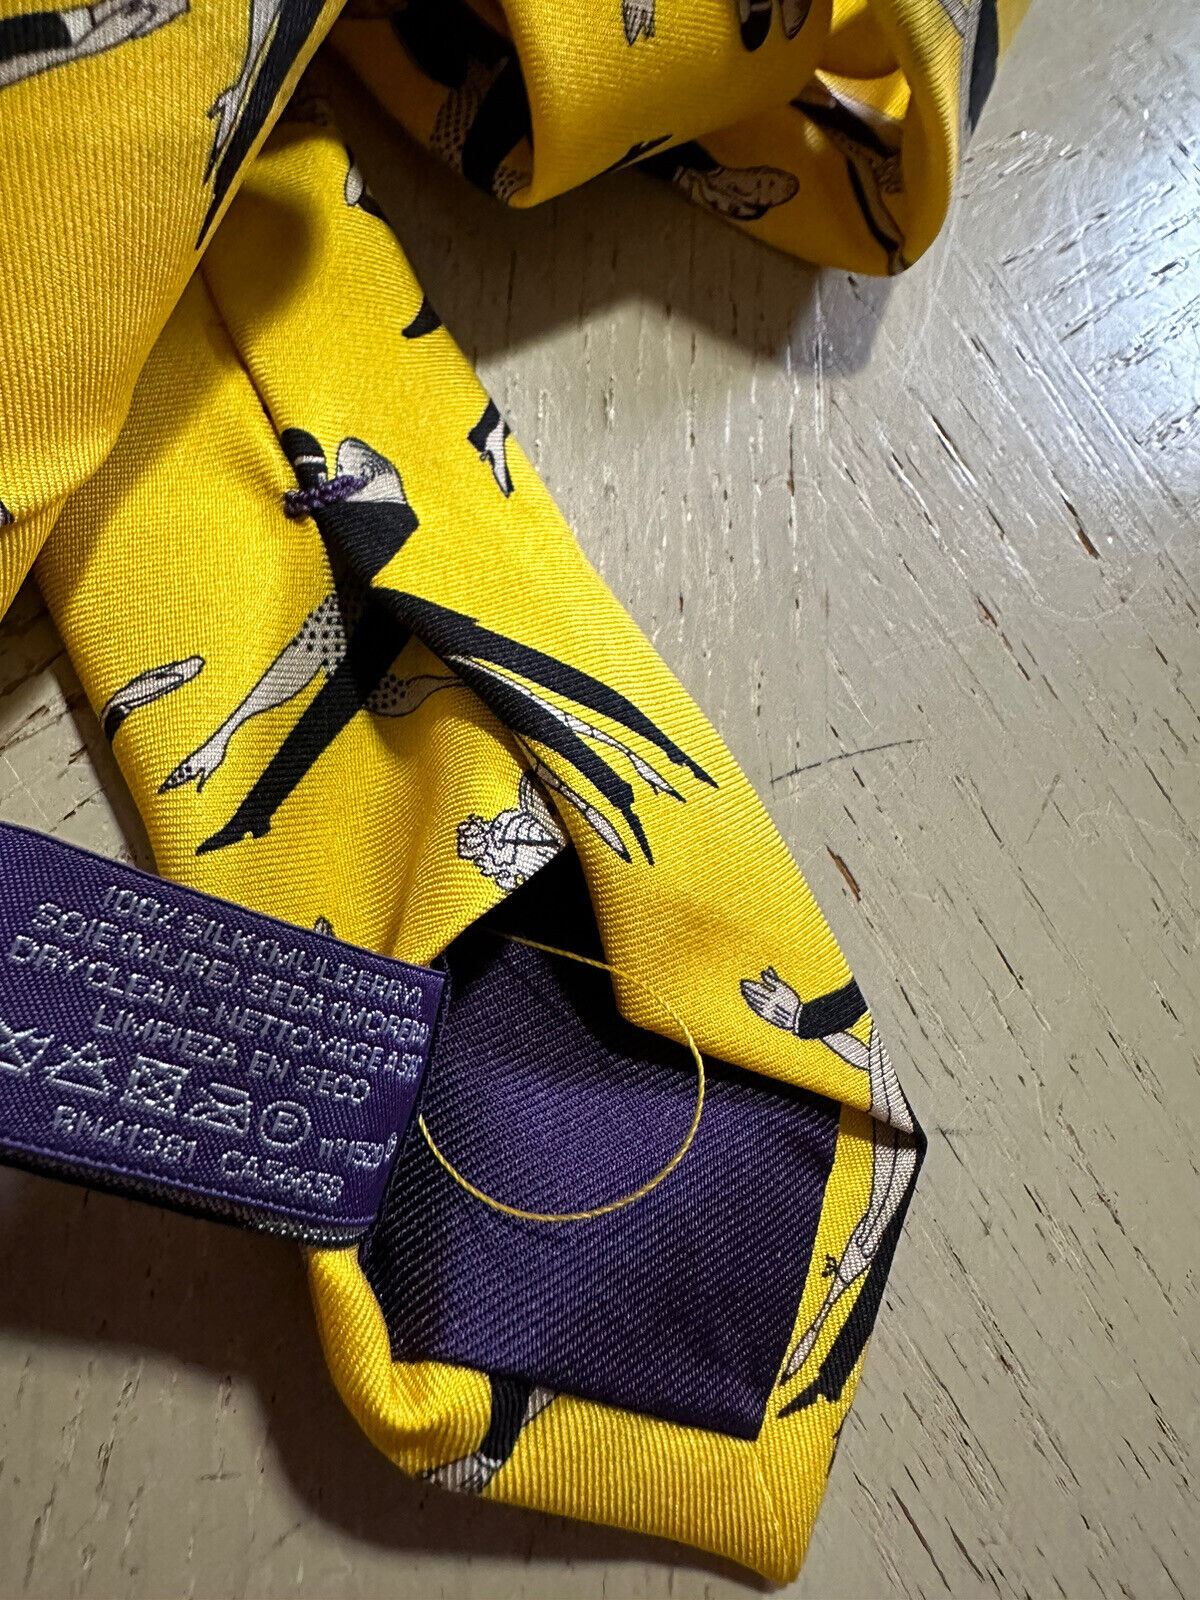 New $235 Ralph Lauren Purple Label Silk Neck Tie Yellow Hand made in Italy